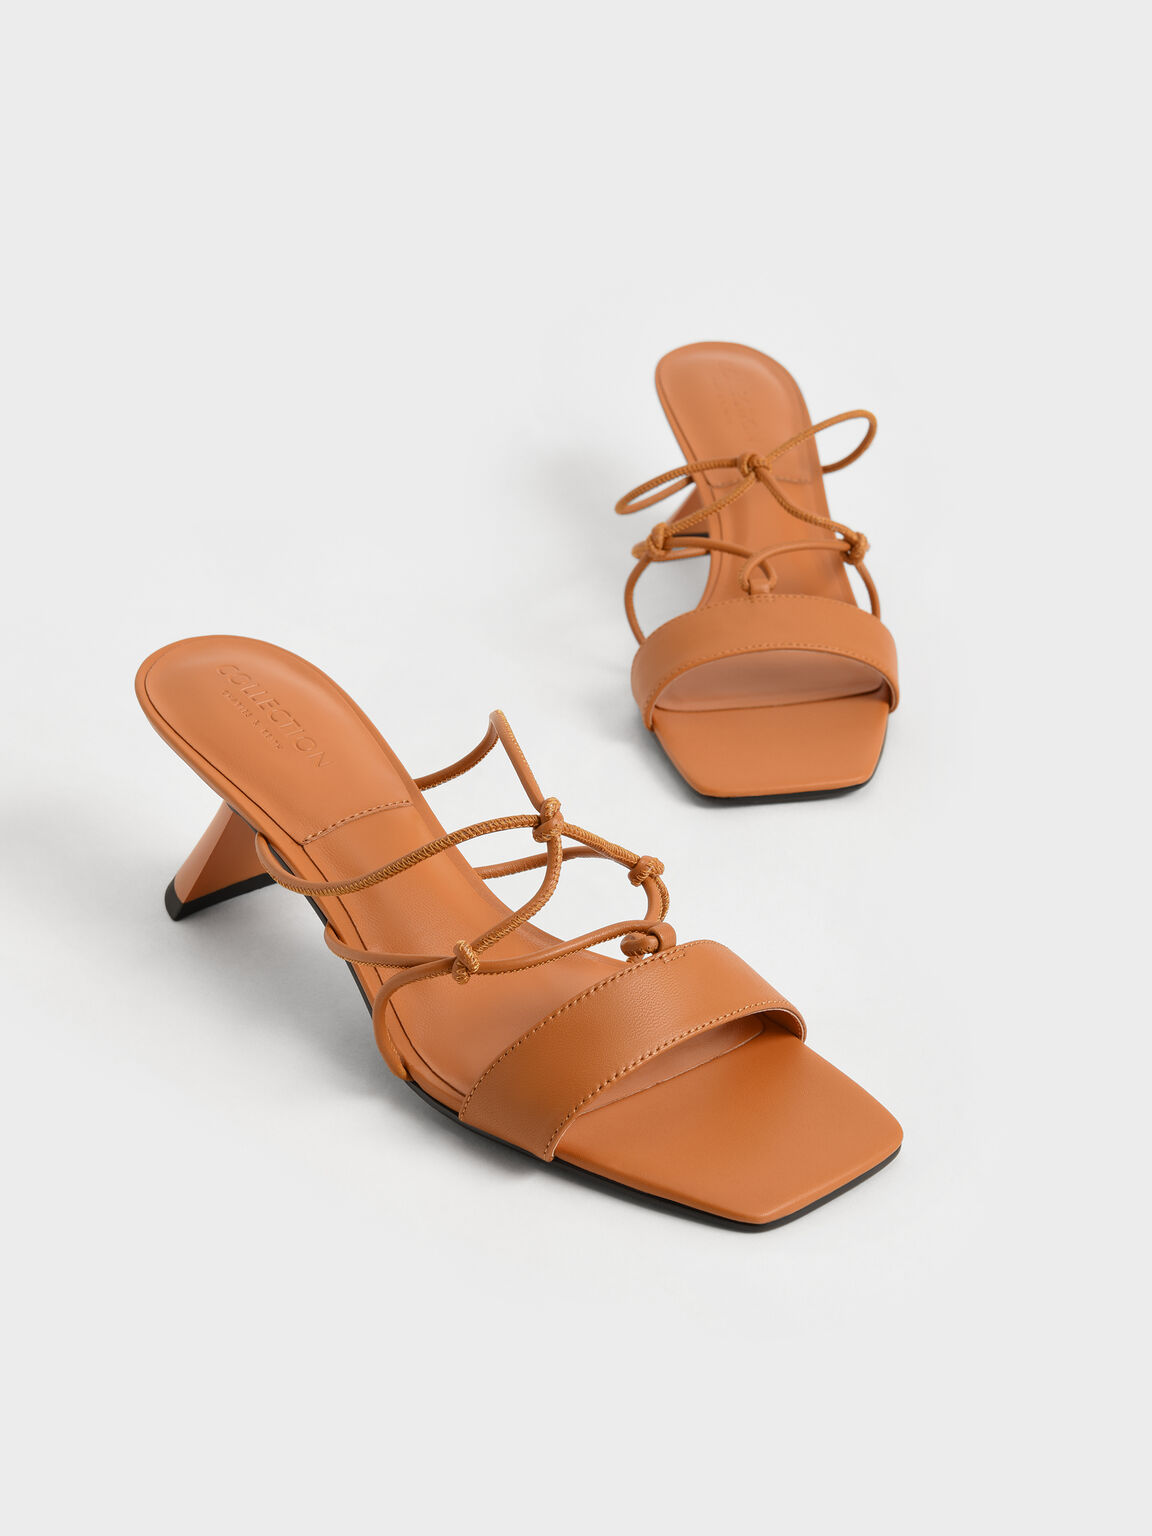 Strappy Leather Sculptural Heel Sandals, Orange, hi-res